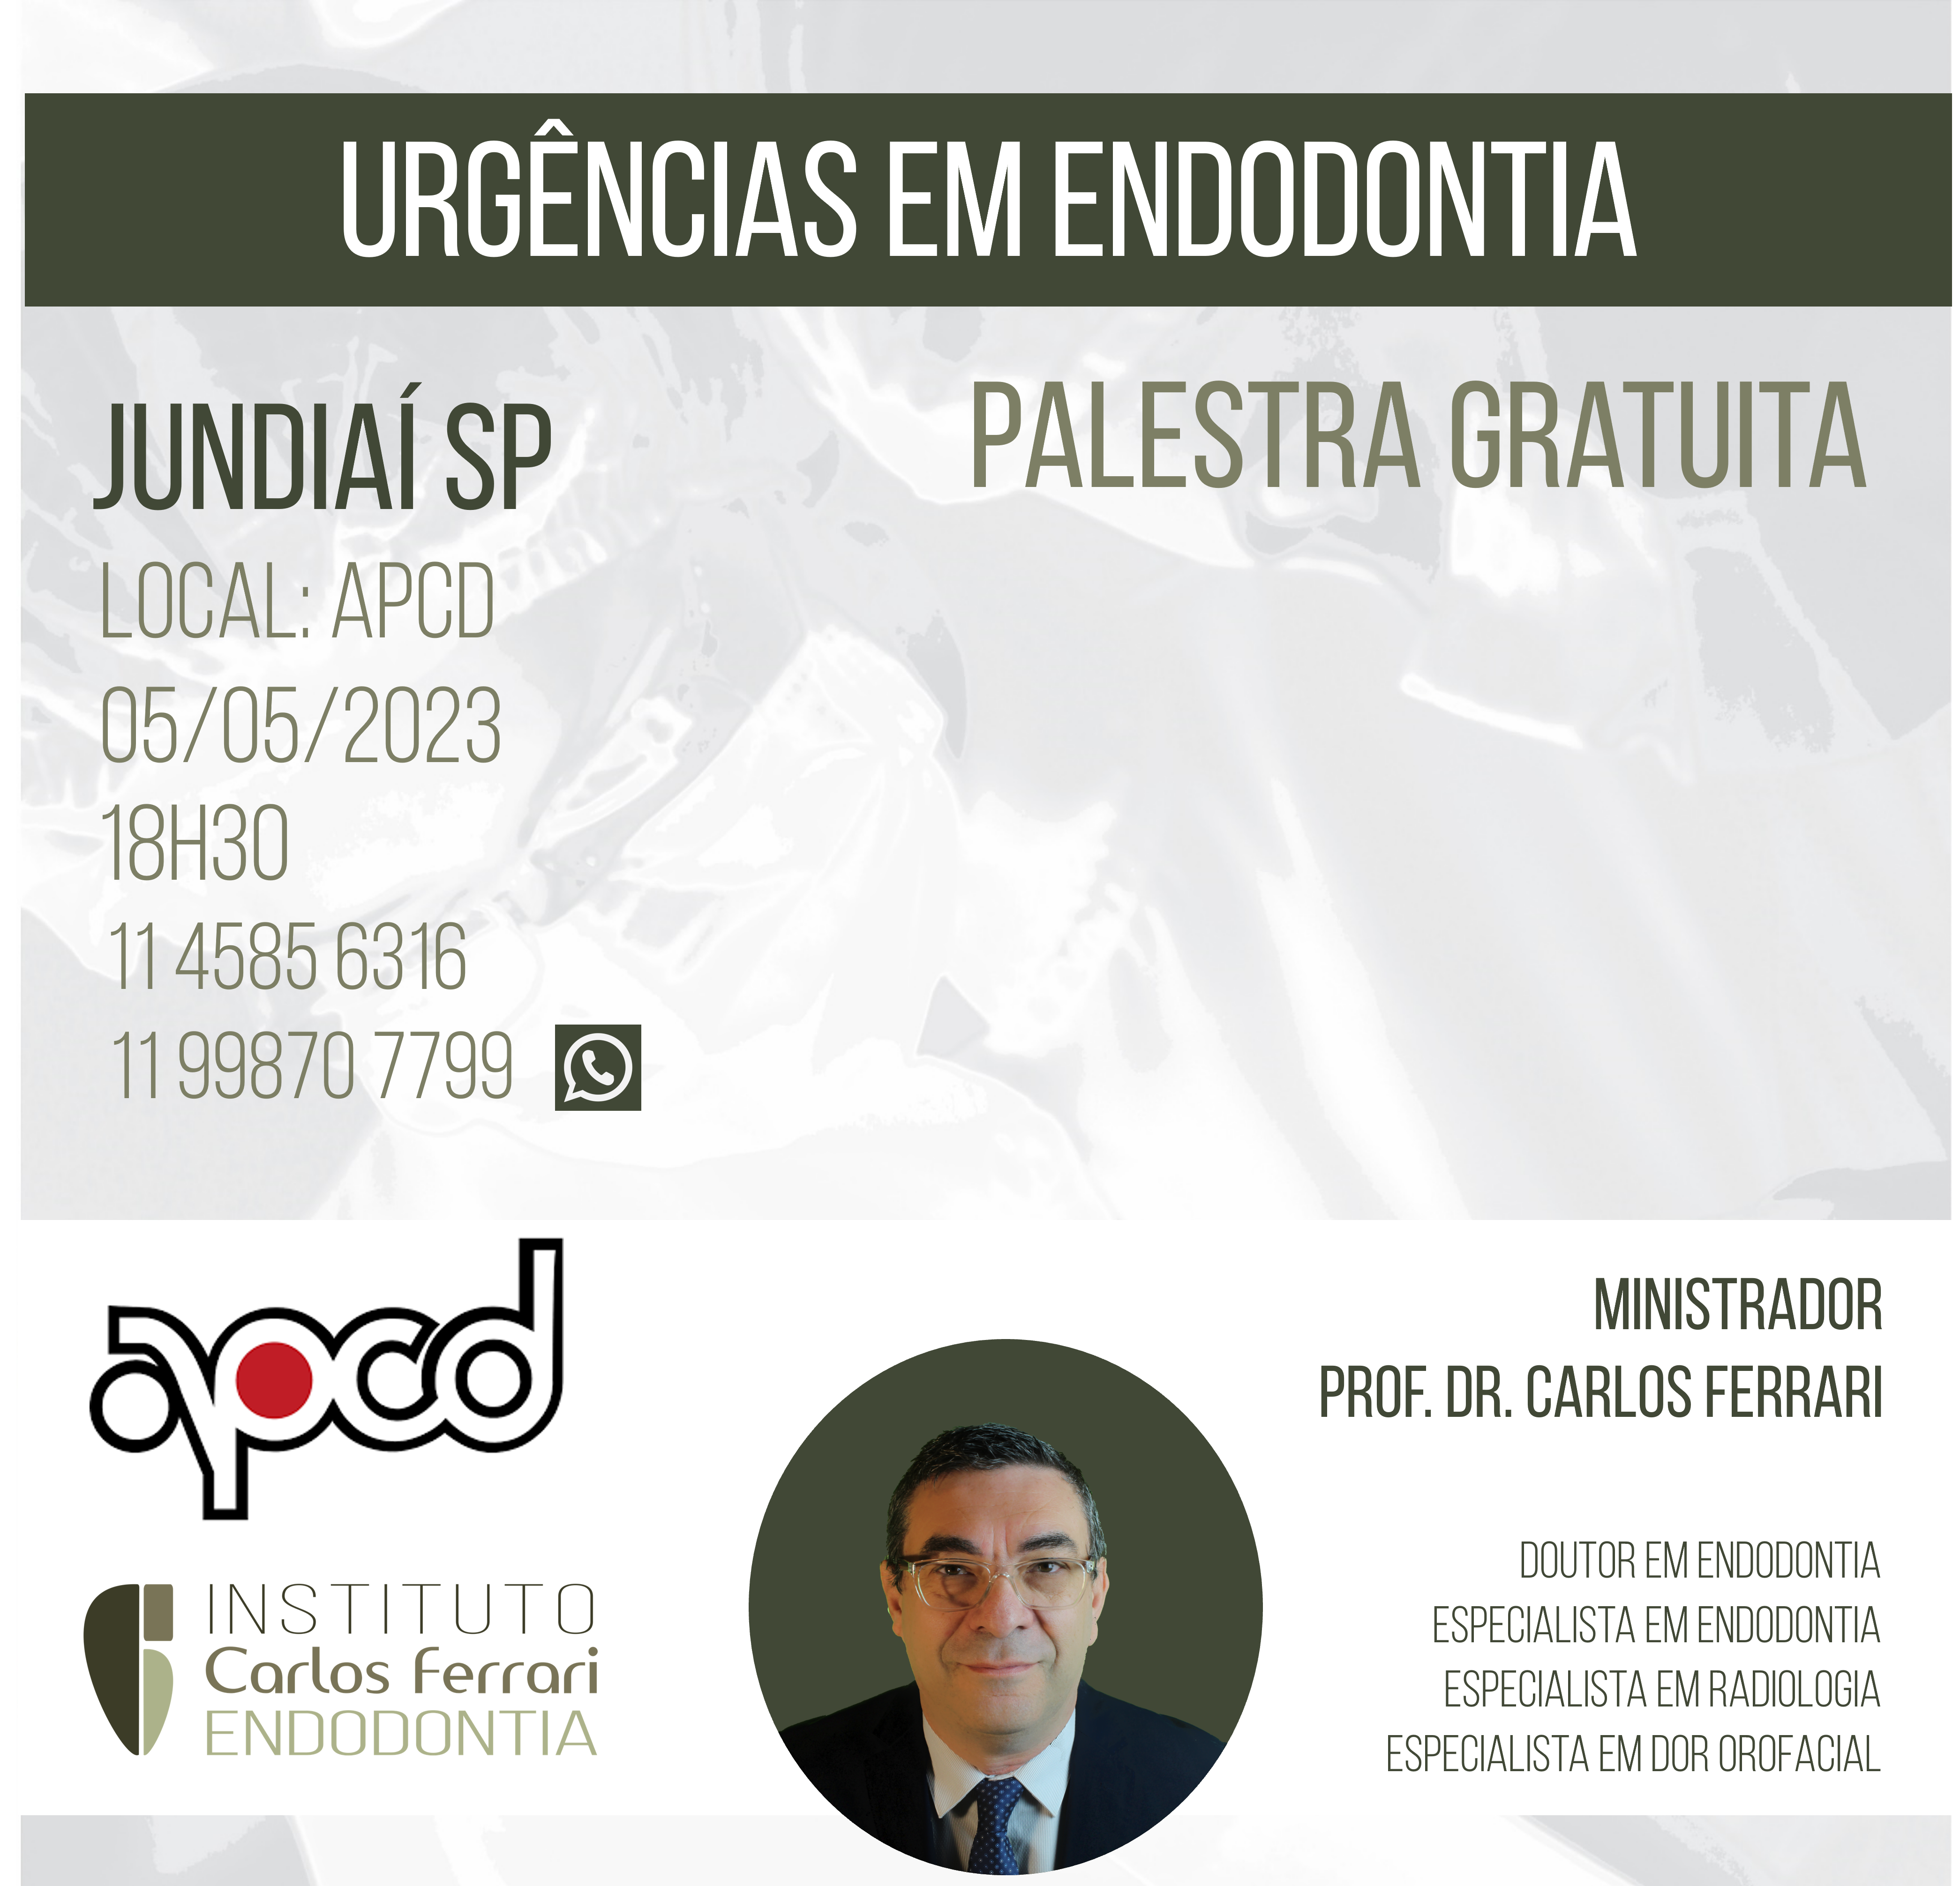 Estás viendo Endodoncia en Jundiaí. Conferencia de urgencias.